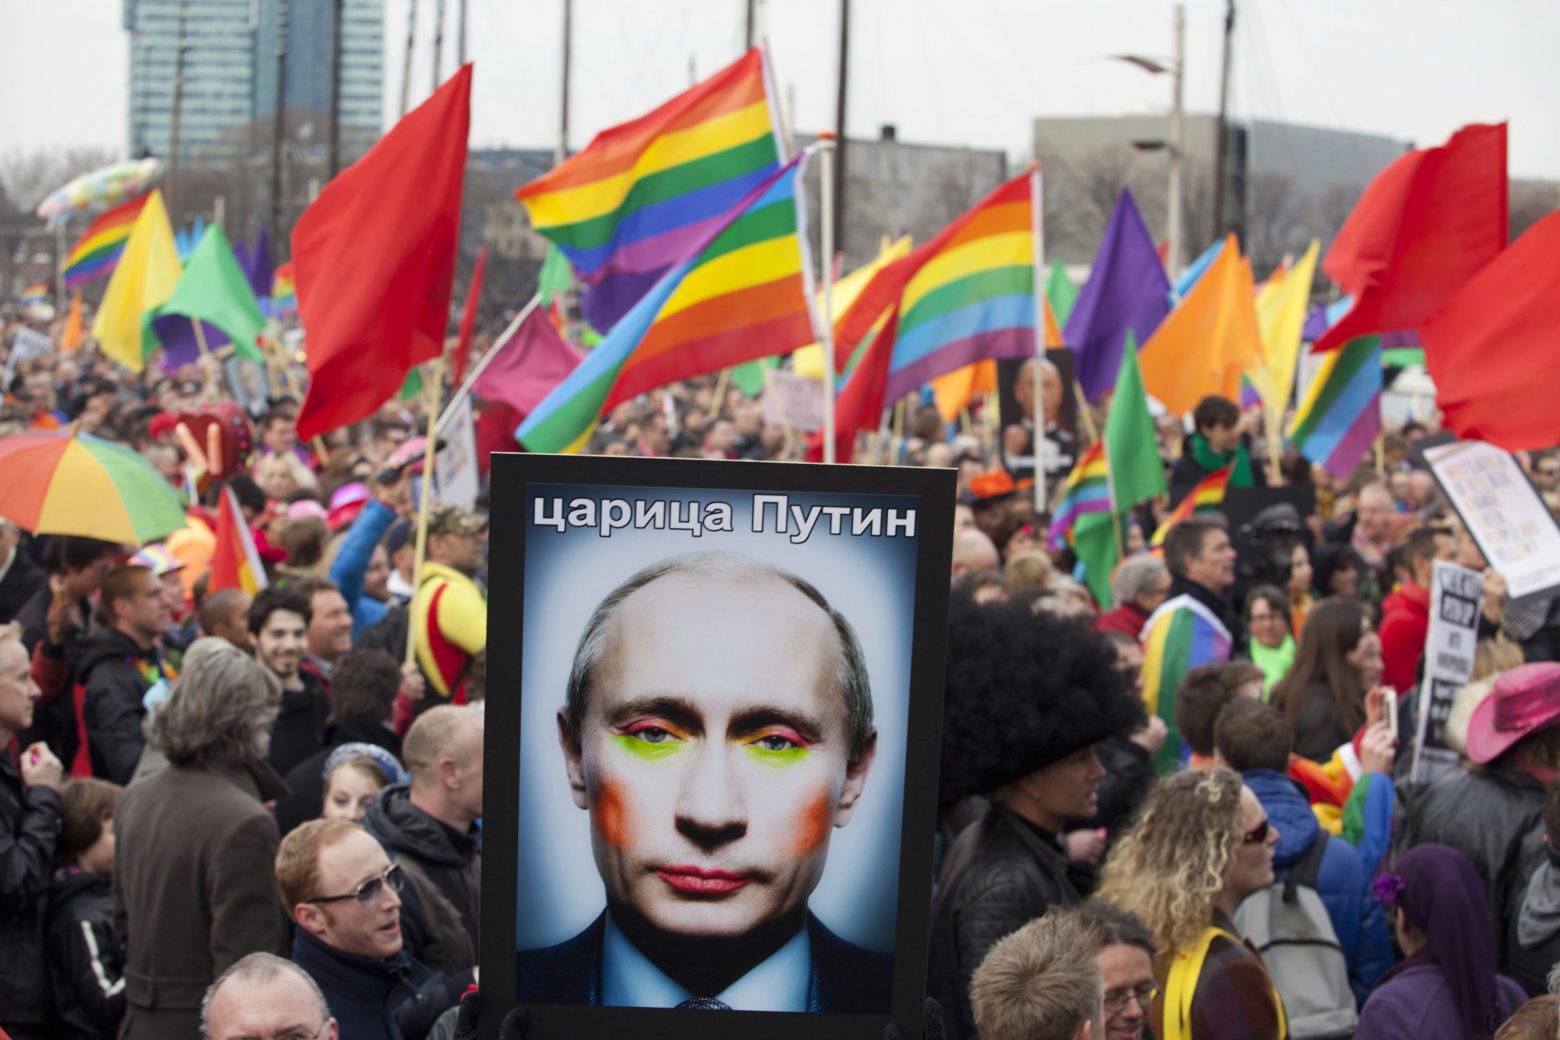 Ρωσία: Λογοκρίνει τους ΛΟΑΤΚΙ - Απαγορεύει την «προπαγάνδα» και μεταξύ ενηλίκων